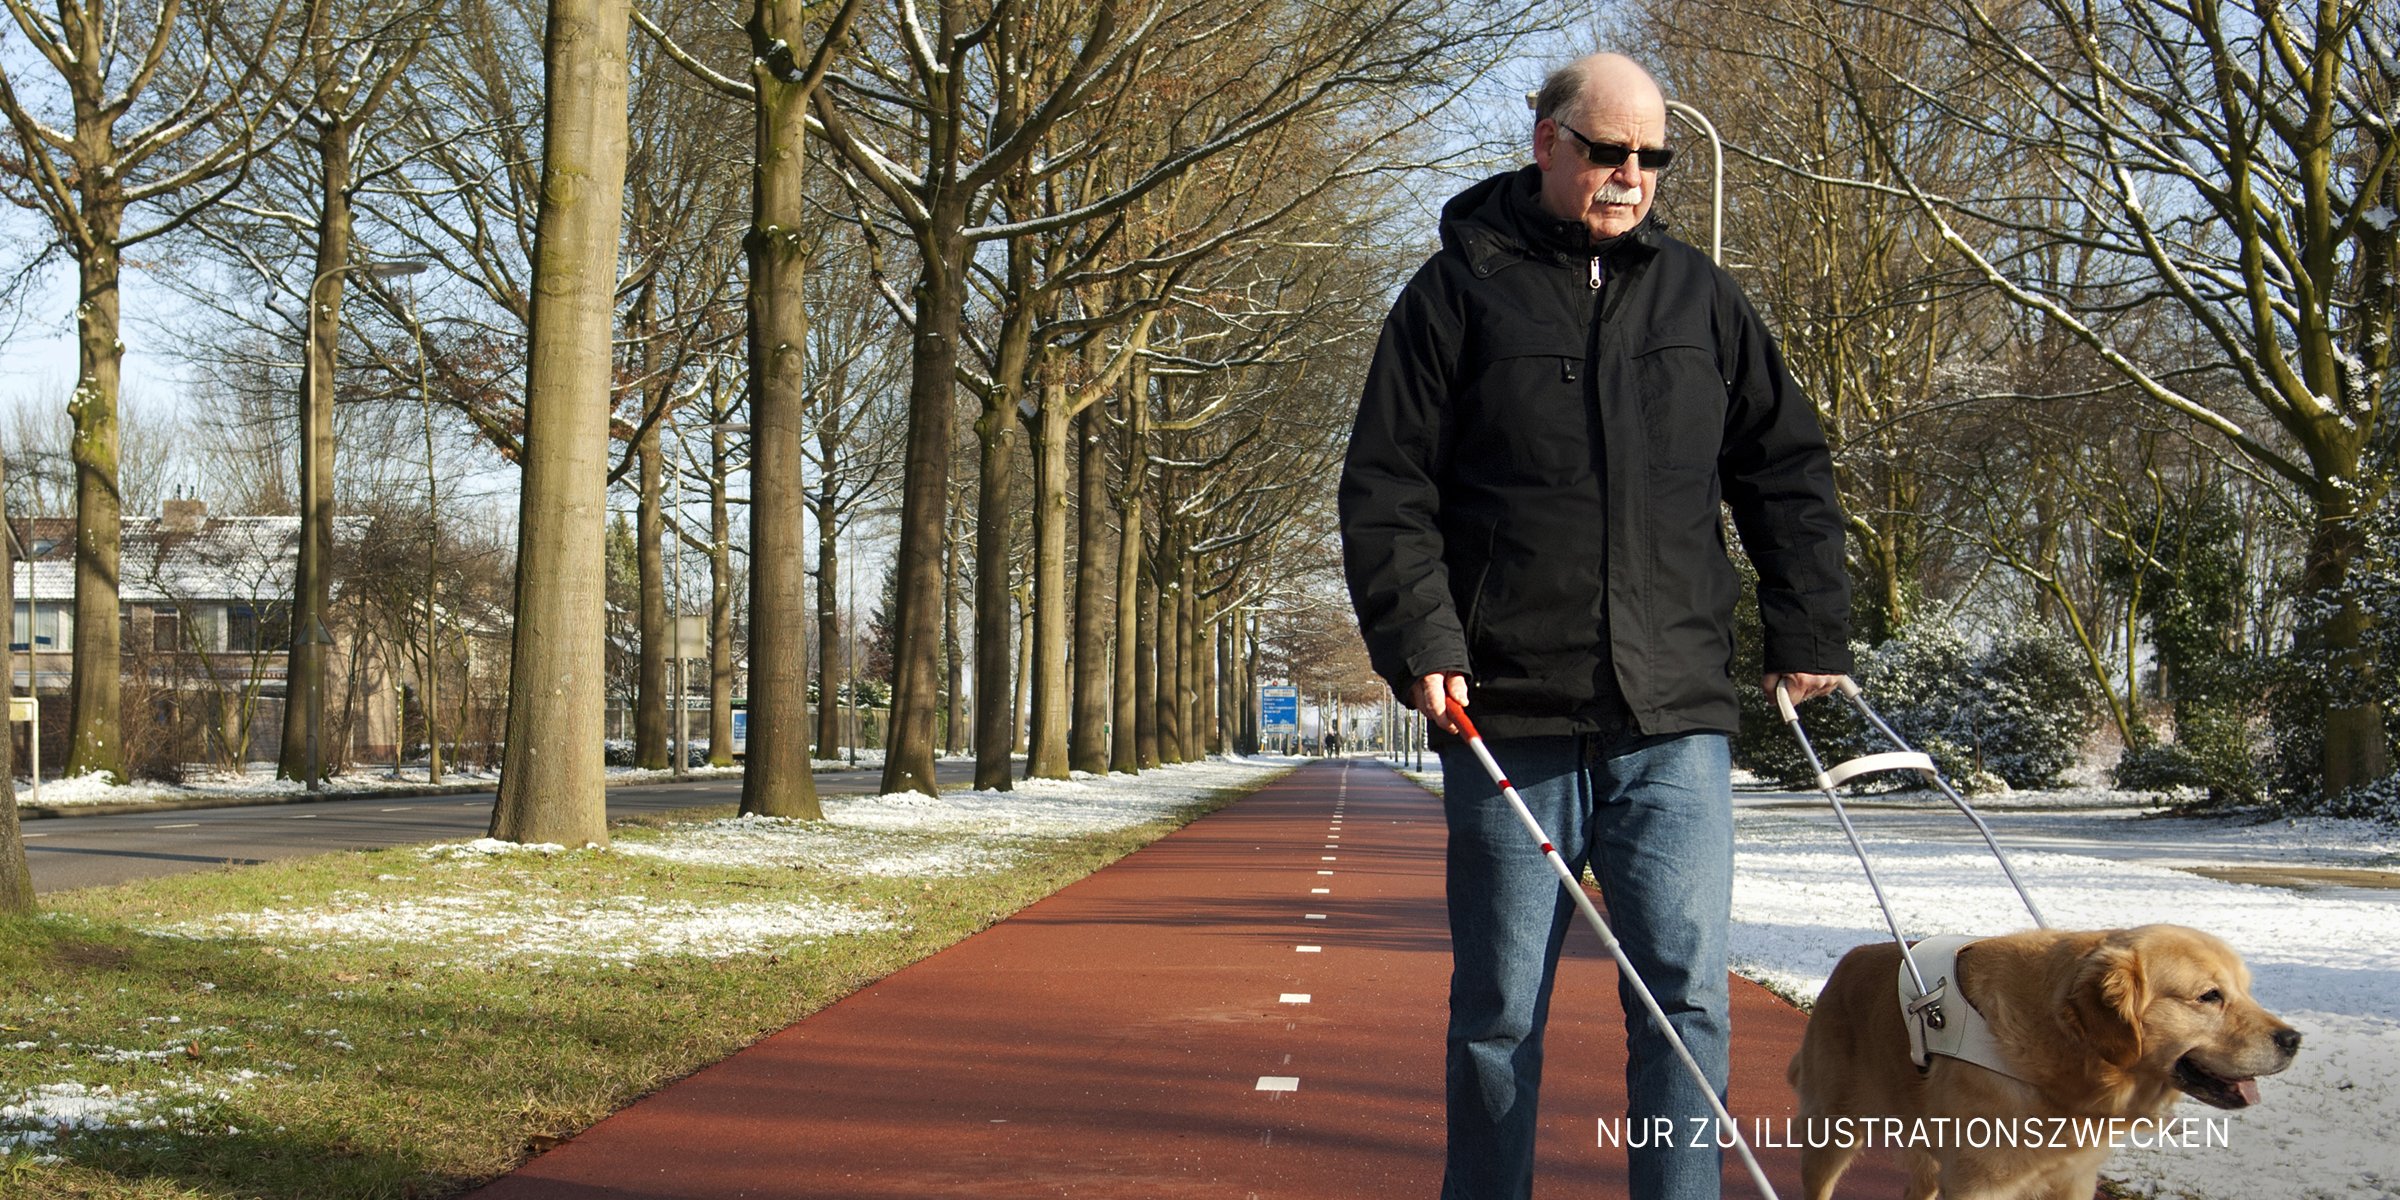 Ein blinder Mann wird von einem Hund geführt. | Quelle: Shutterstock